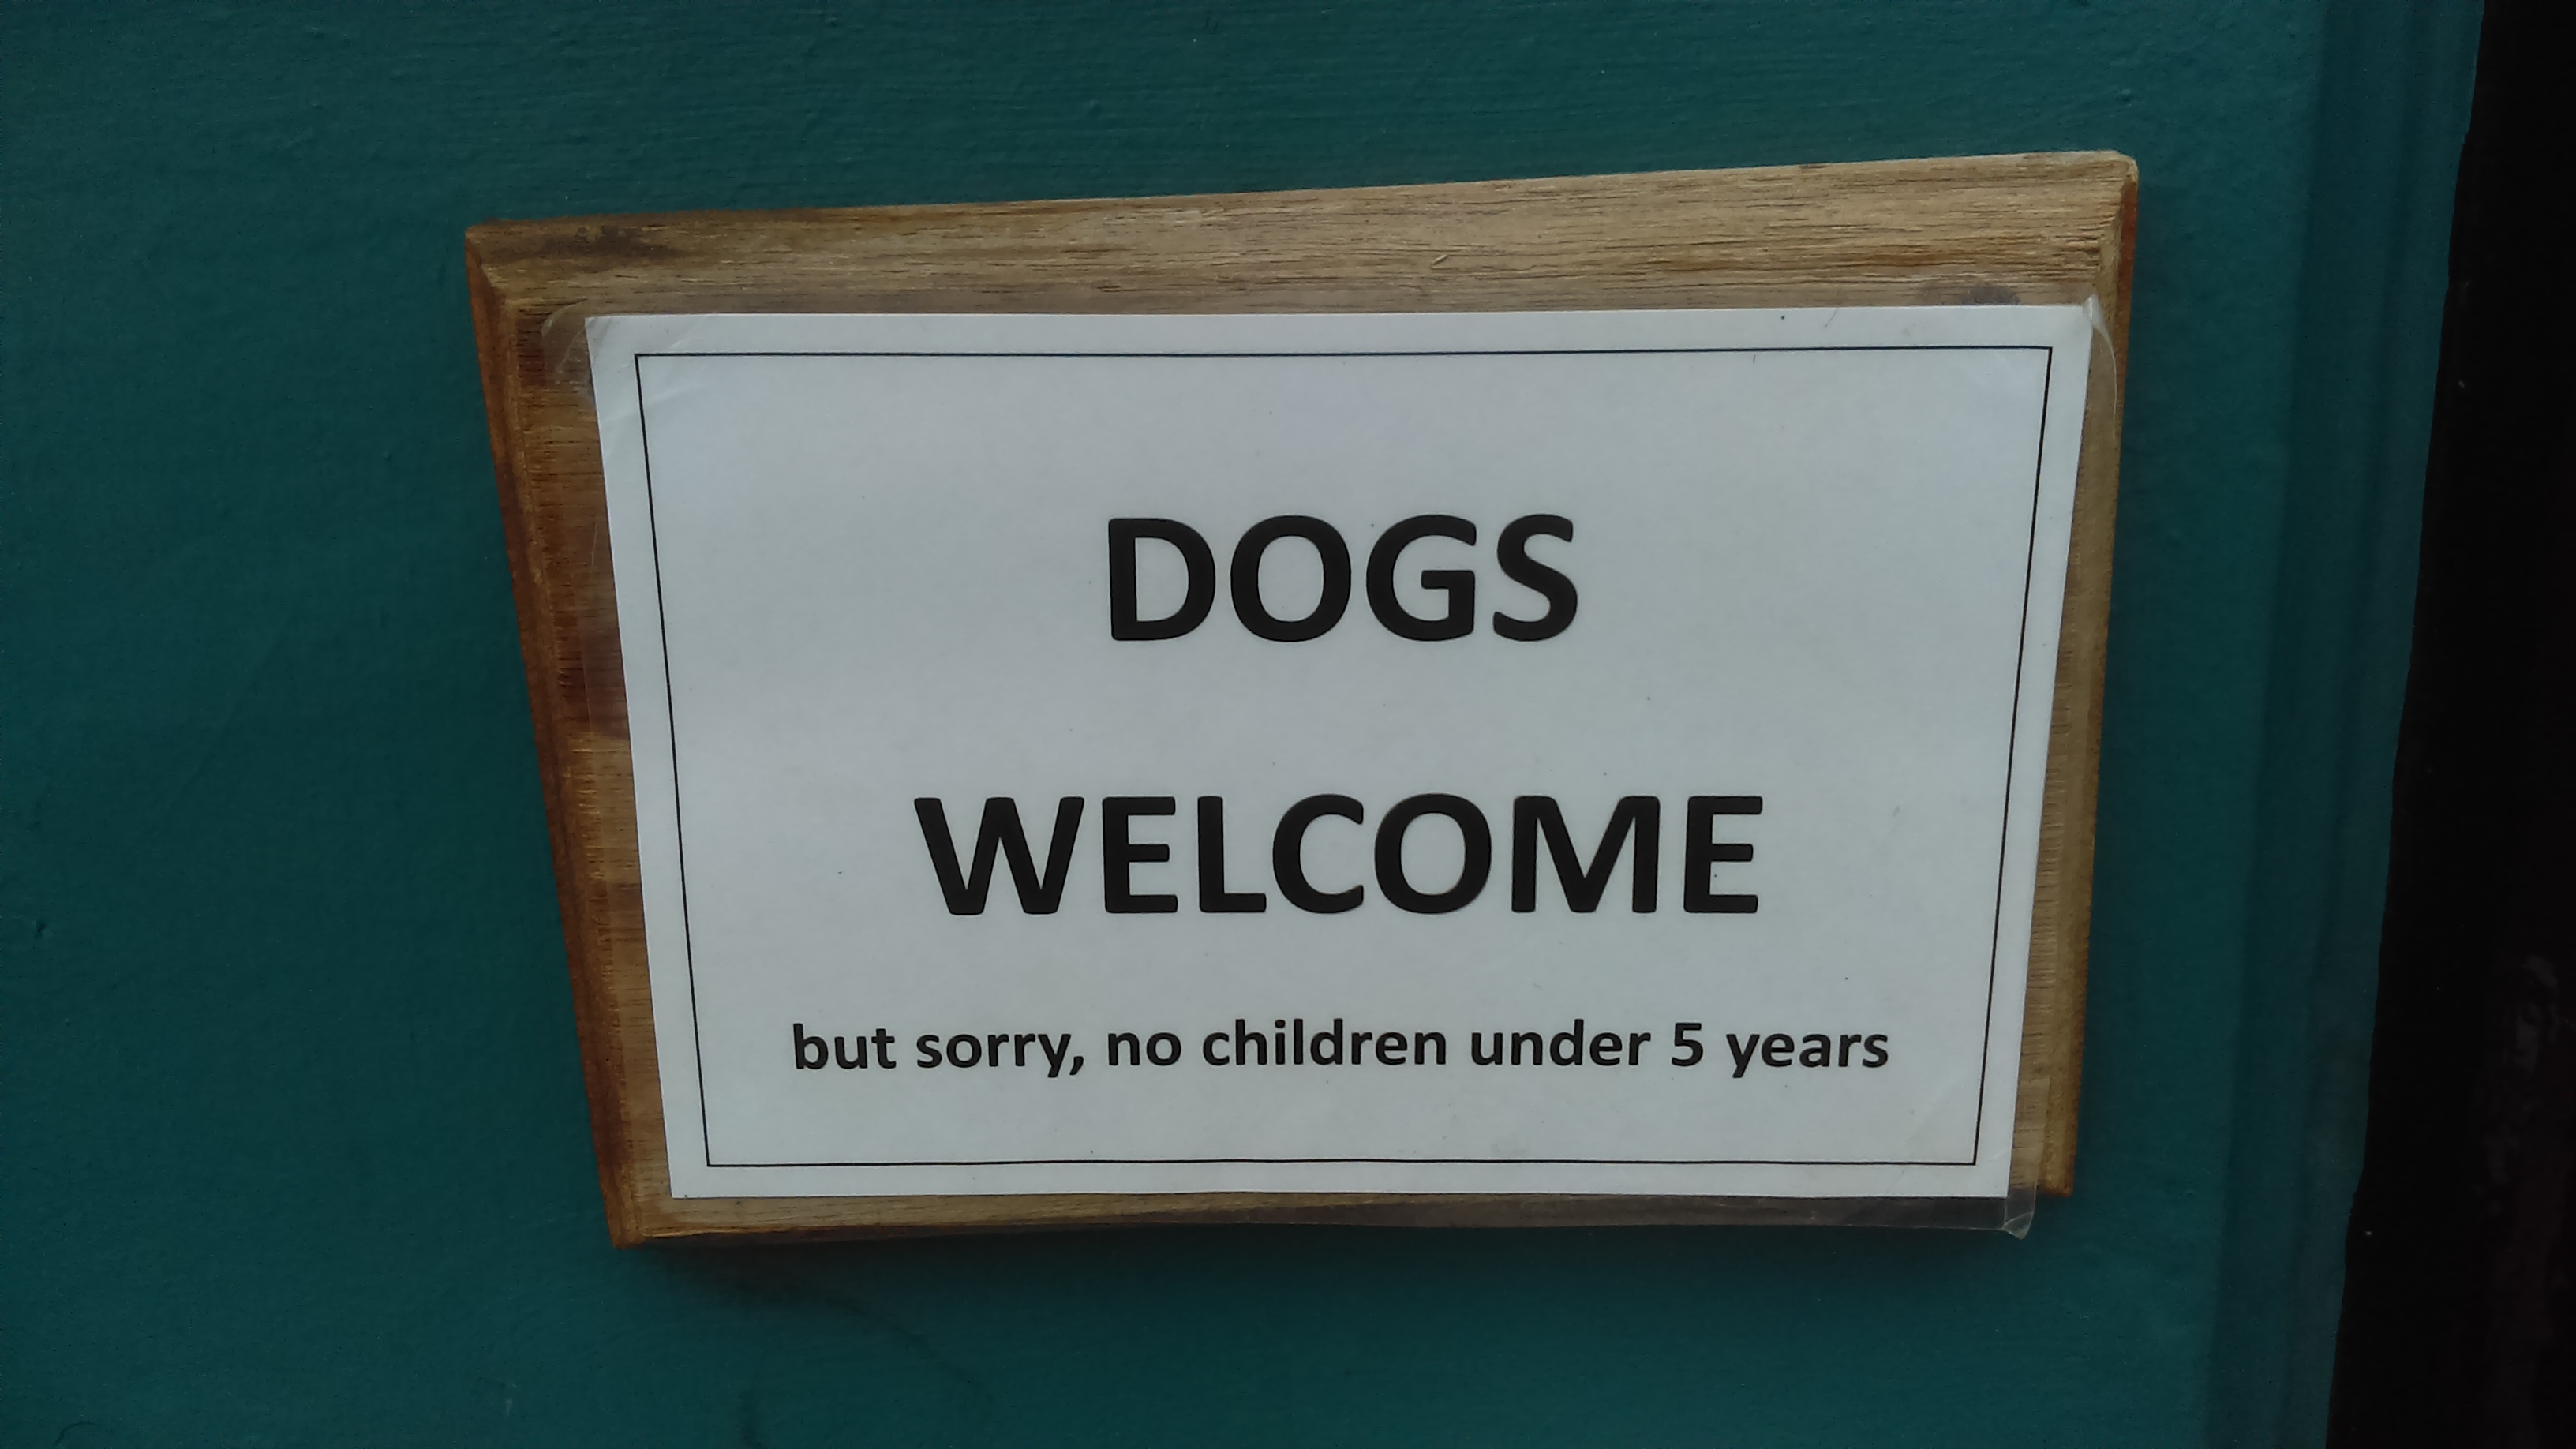 Cartell en un pub d'Edimburg que accepta gossos però no nens